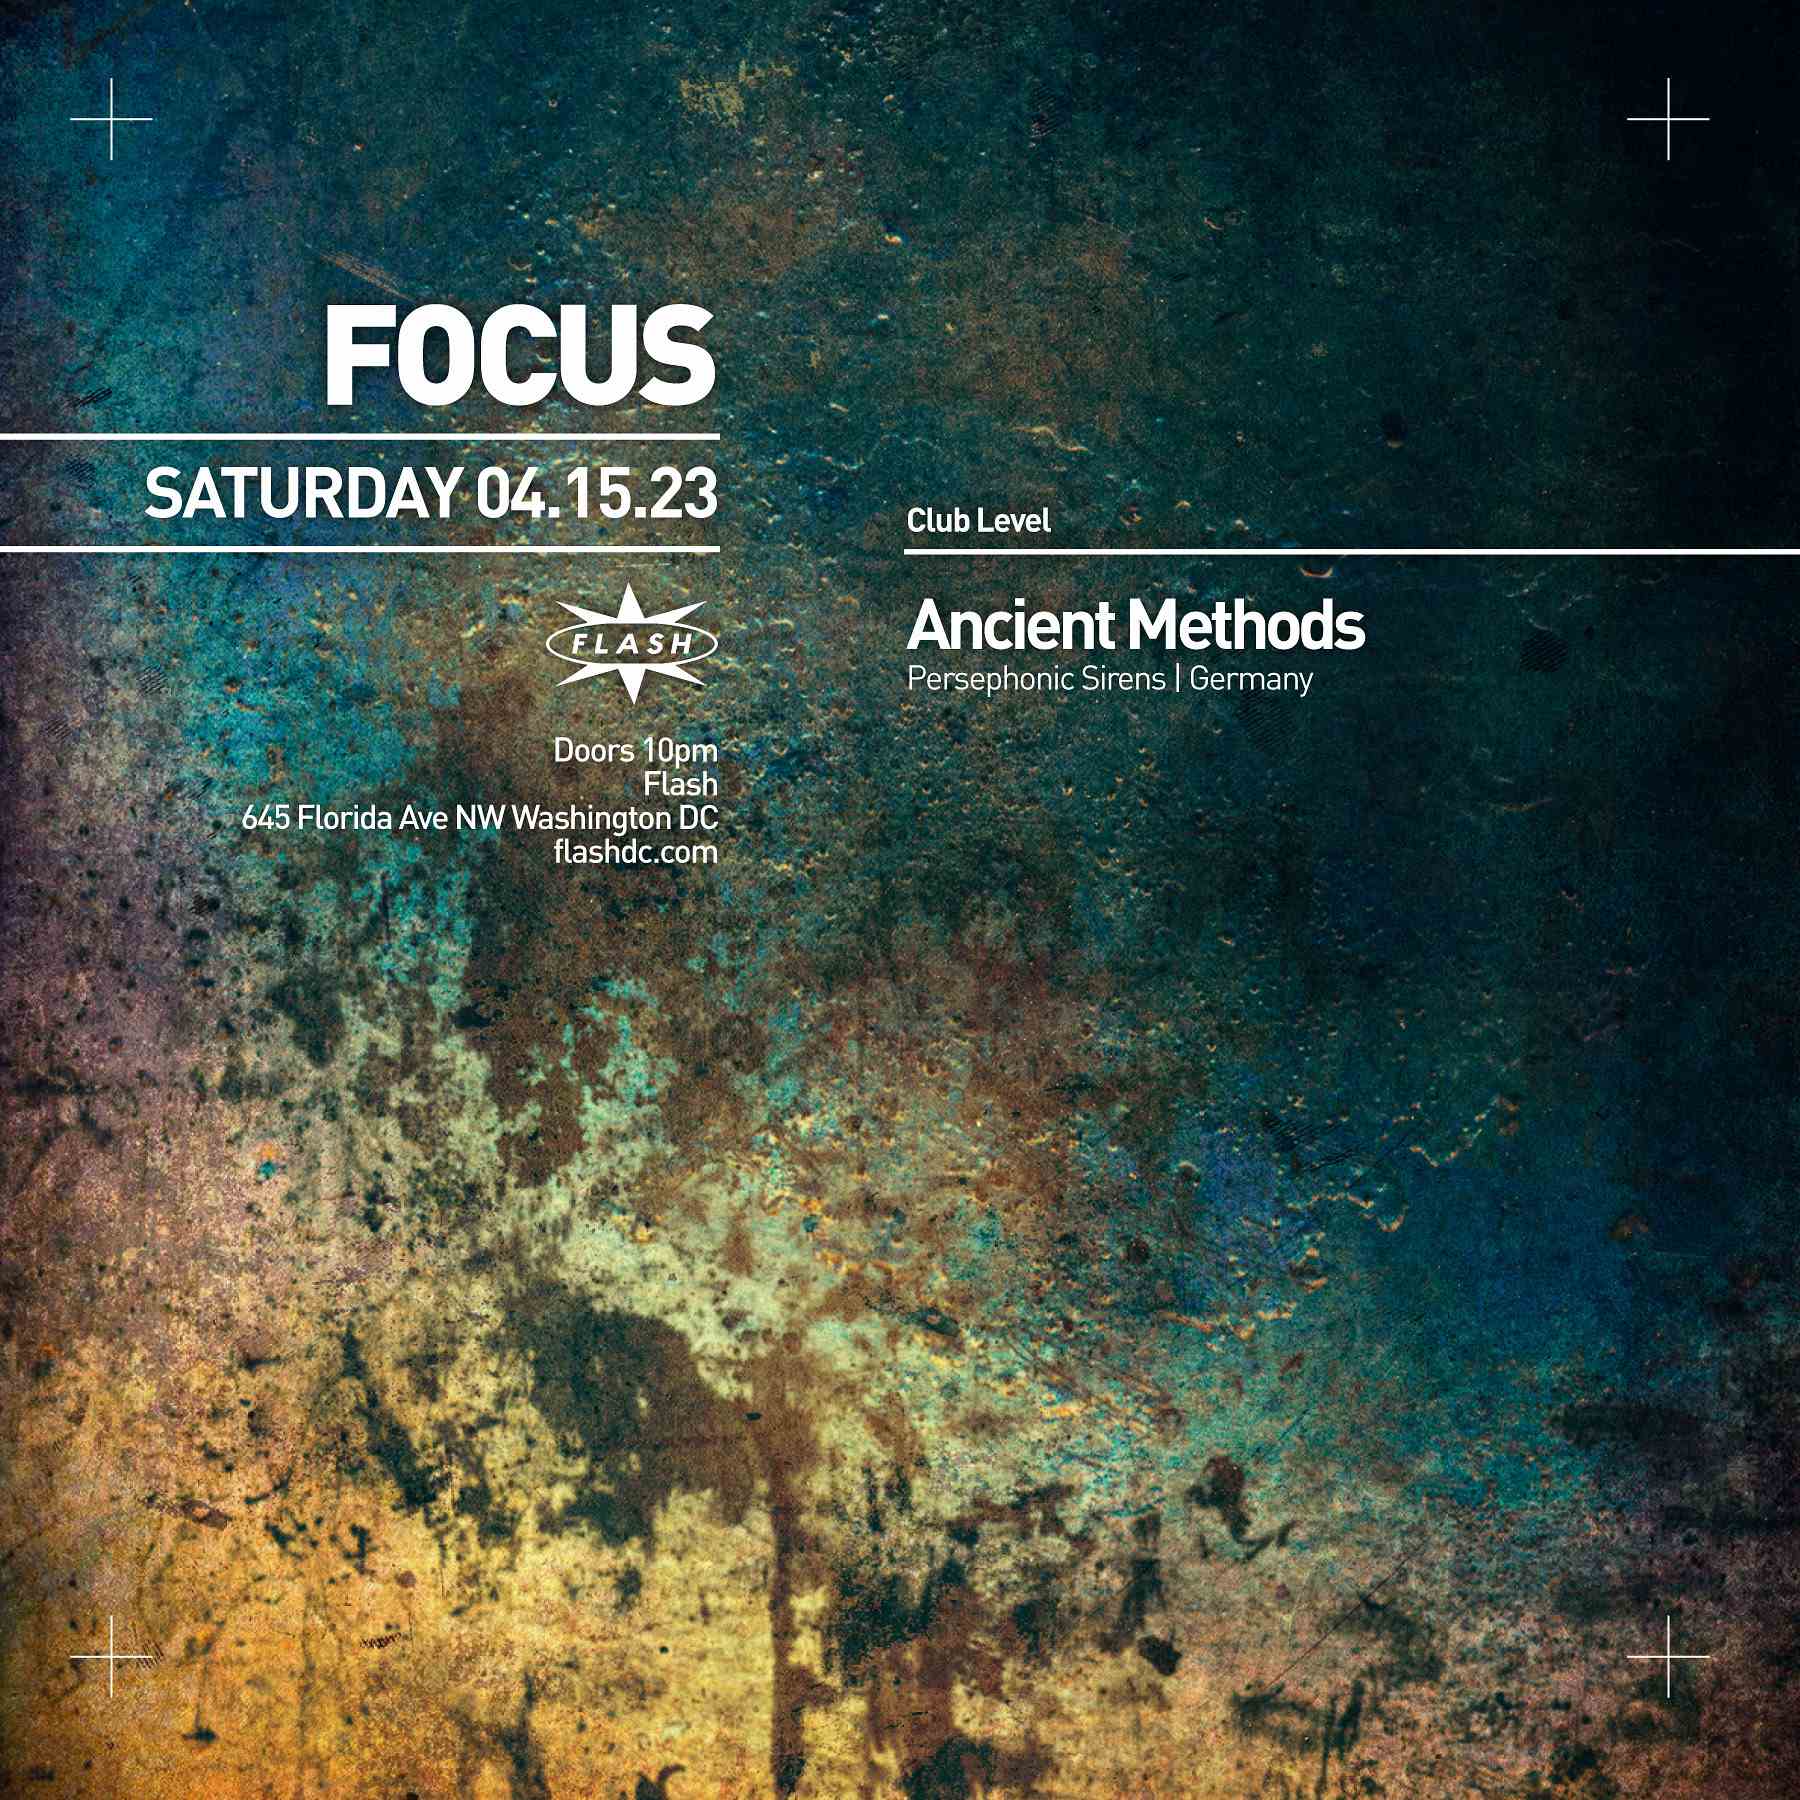 FOCUS: Ancient Methods event flyer